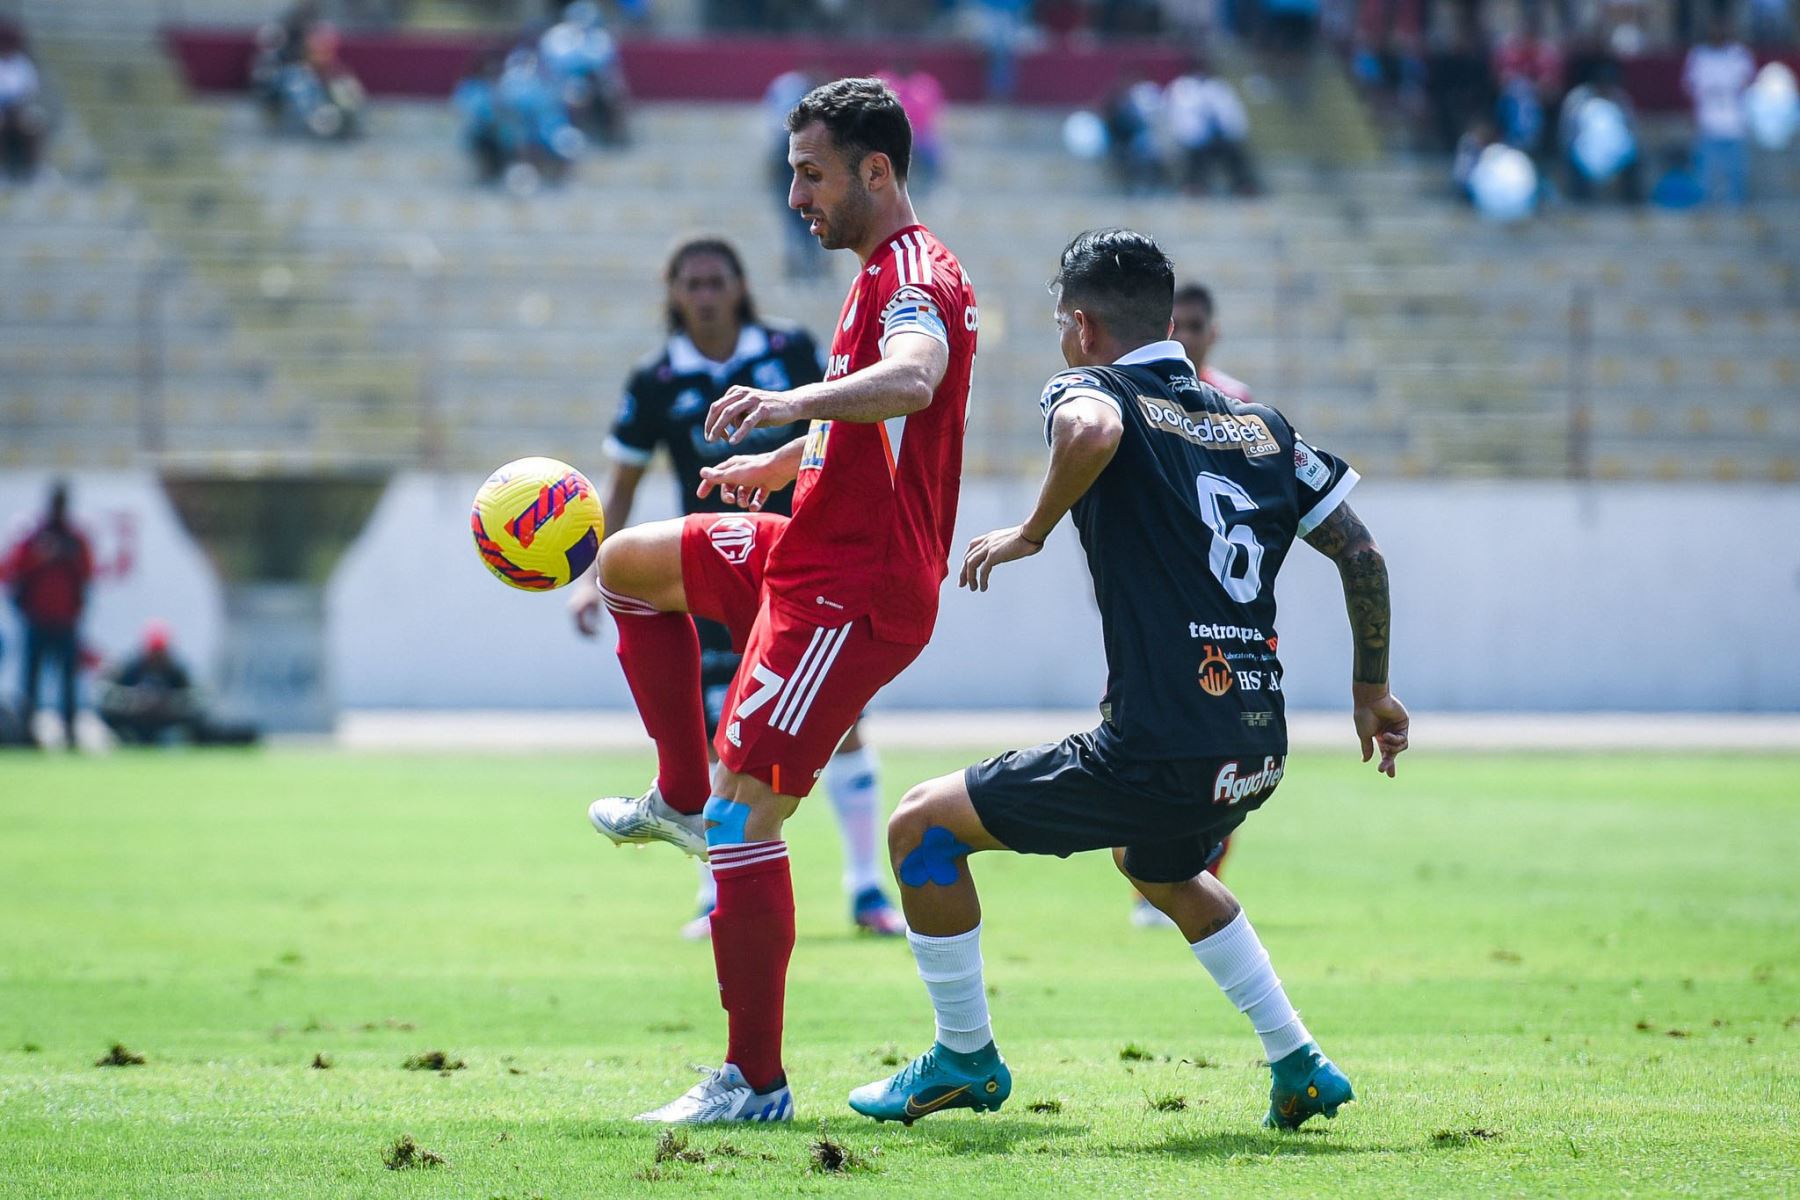 El jugador Horacio Calcaterra de Sporting Cristal disputa el balón con el jugador del club Carlos  Mannucci en el partido de la jornada 19 del Torneo Apertura de la Liga 1 en el estadio Mansiche.
Foto: @ClubSCristal